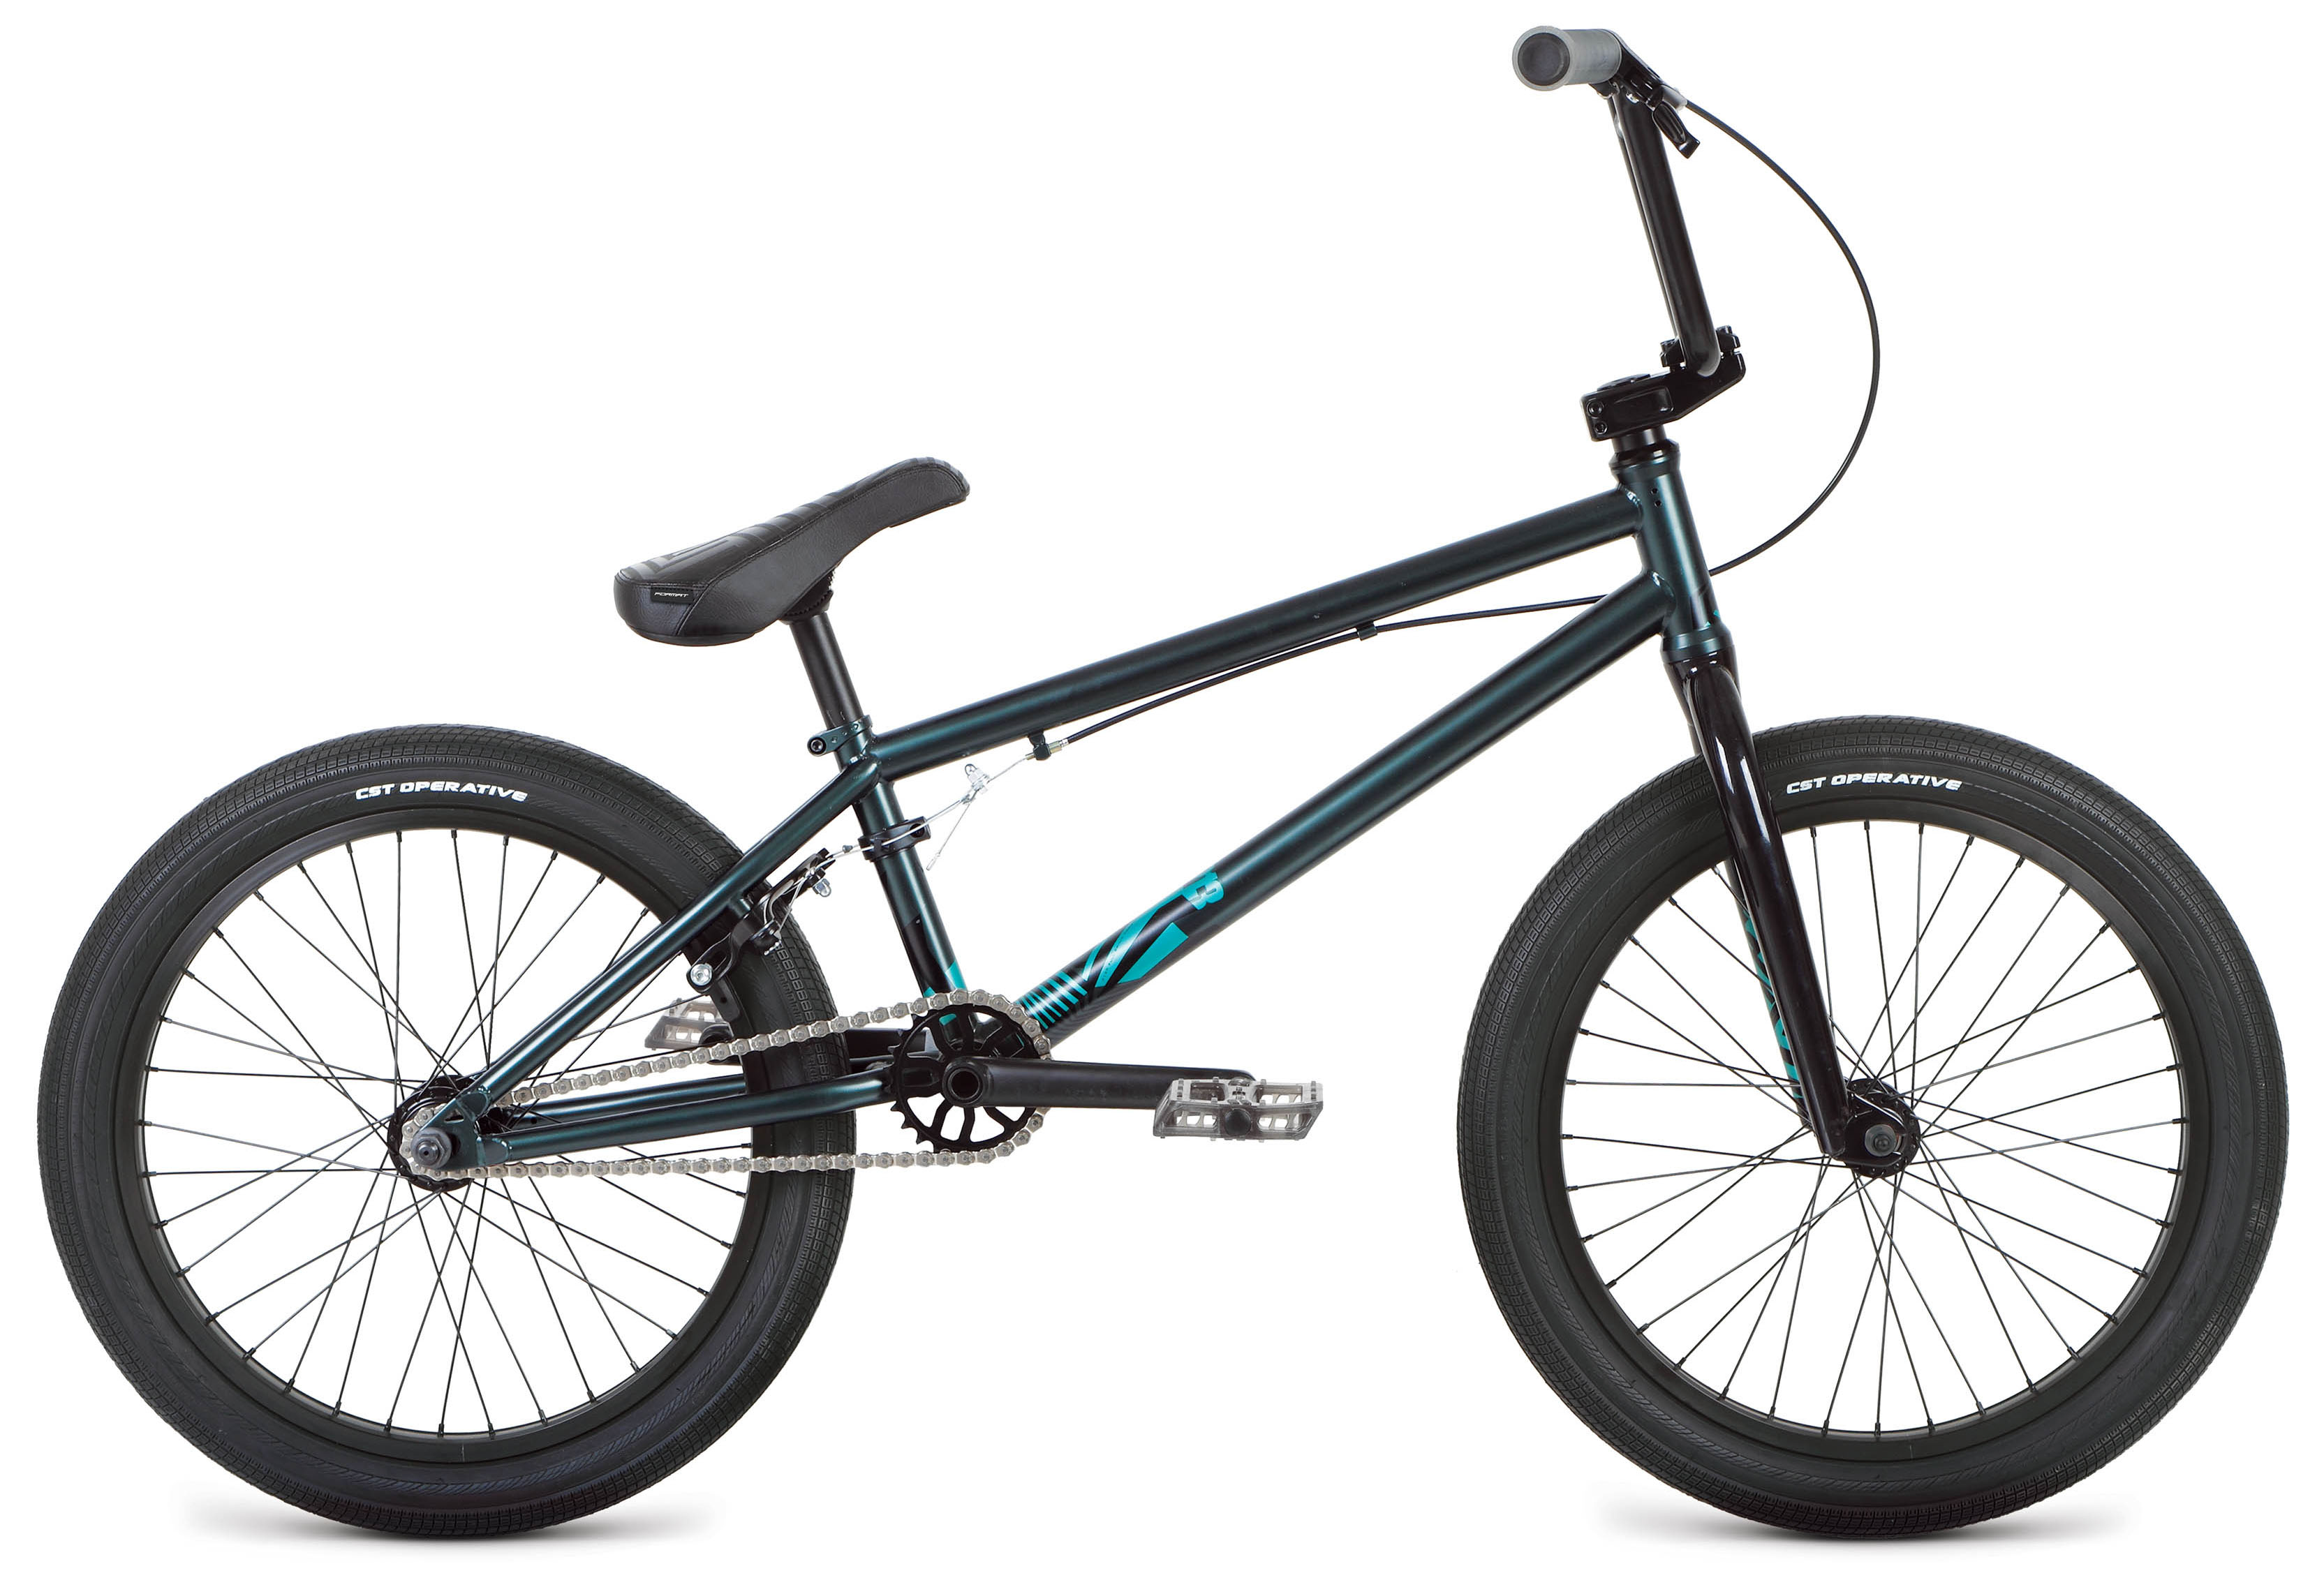  Отзывы о Велосипеде BMX Format 3213 20 2019